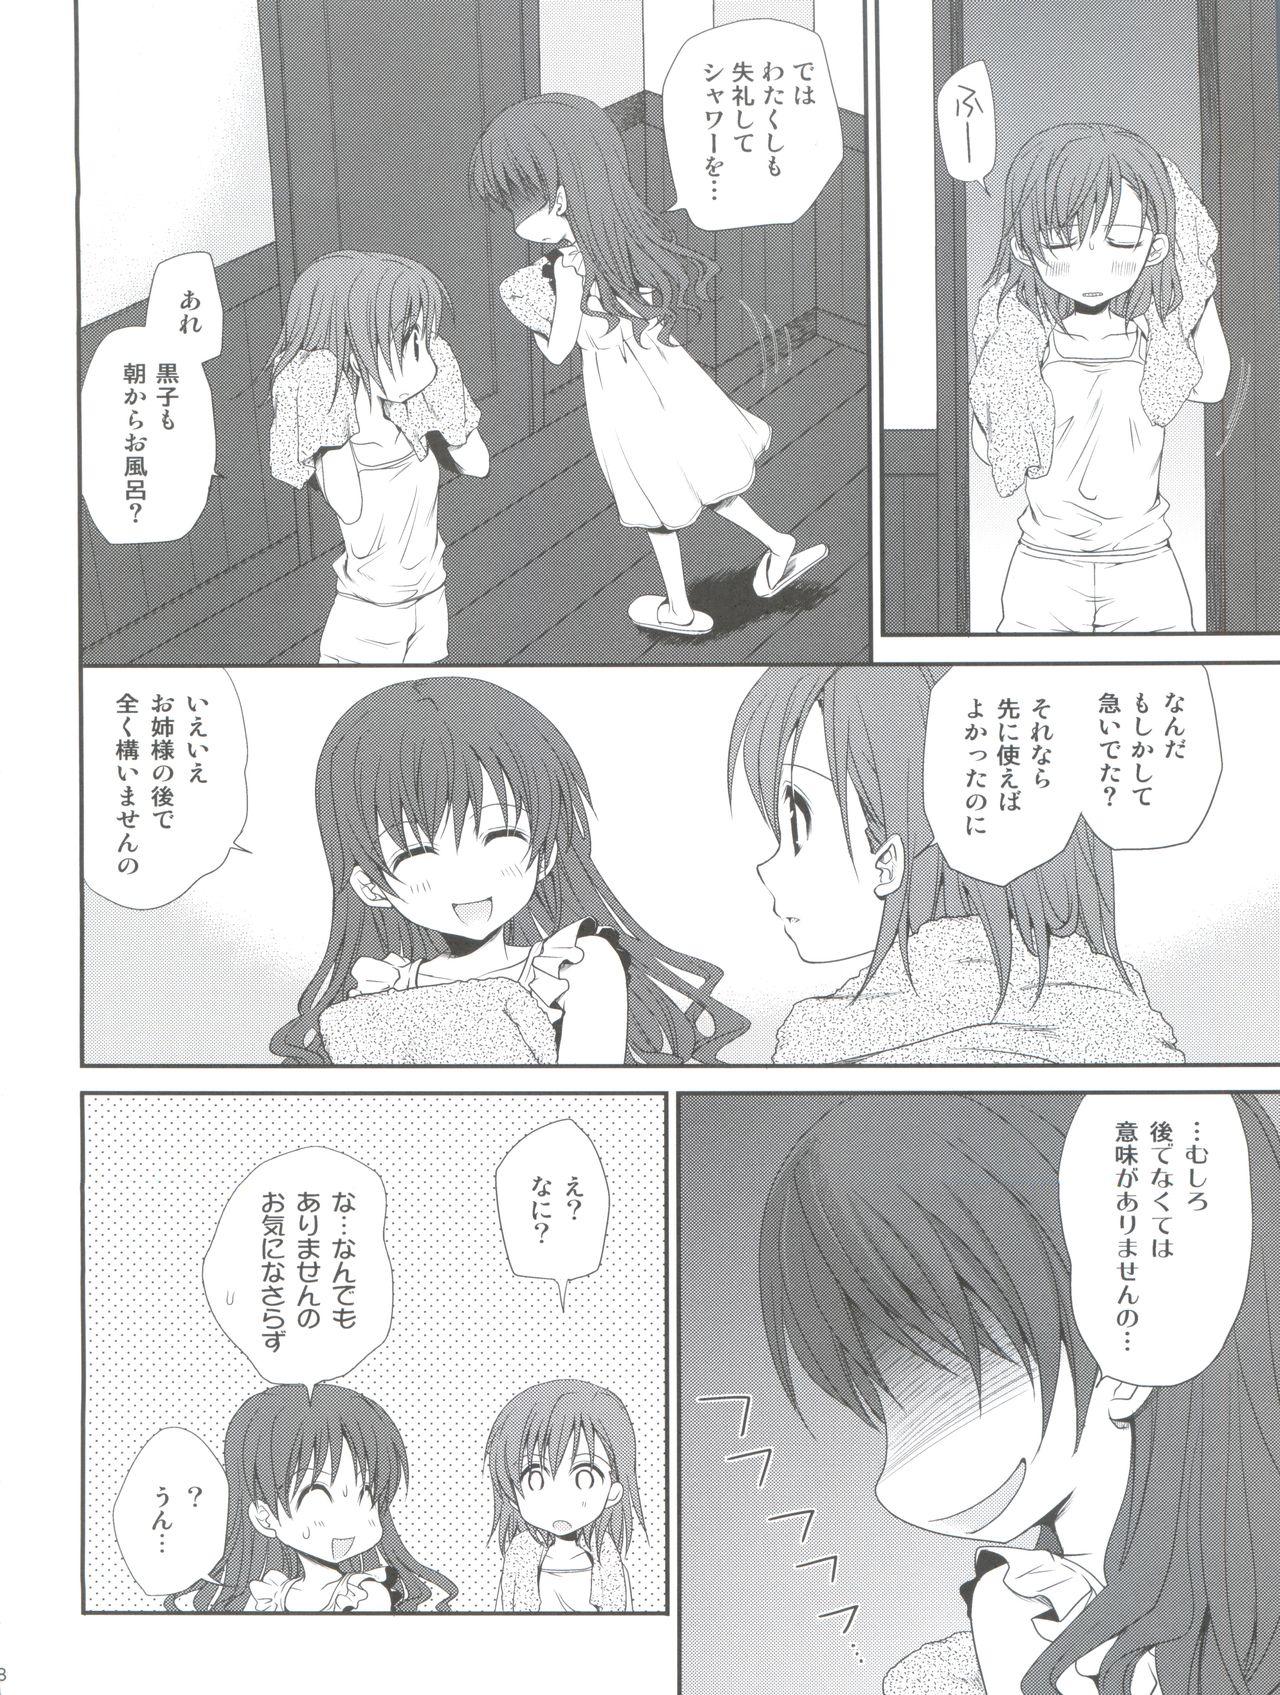 Classy Choudenji Hou no Sasoikata - Toaru majutsu no index Teens - Page 8